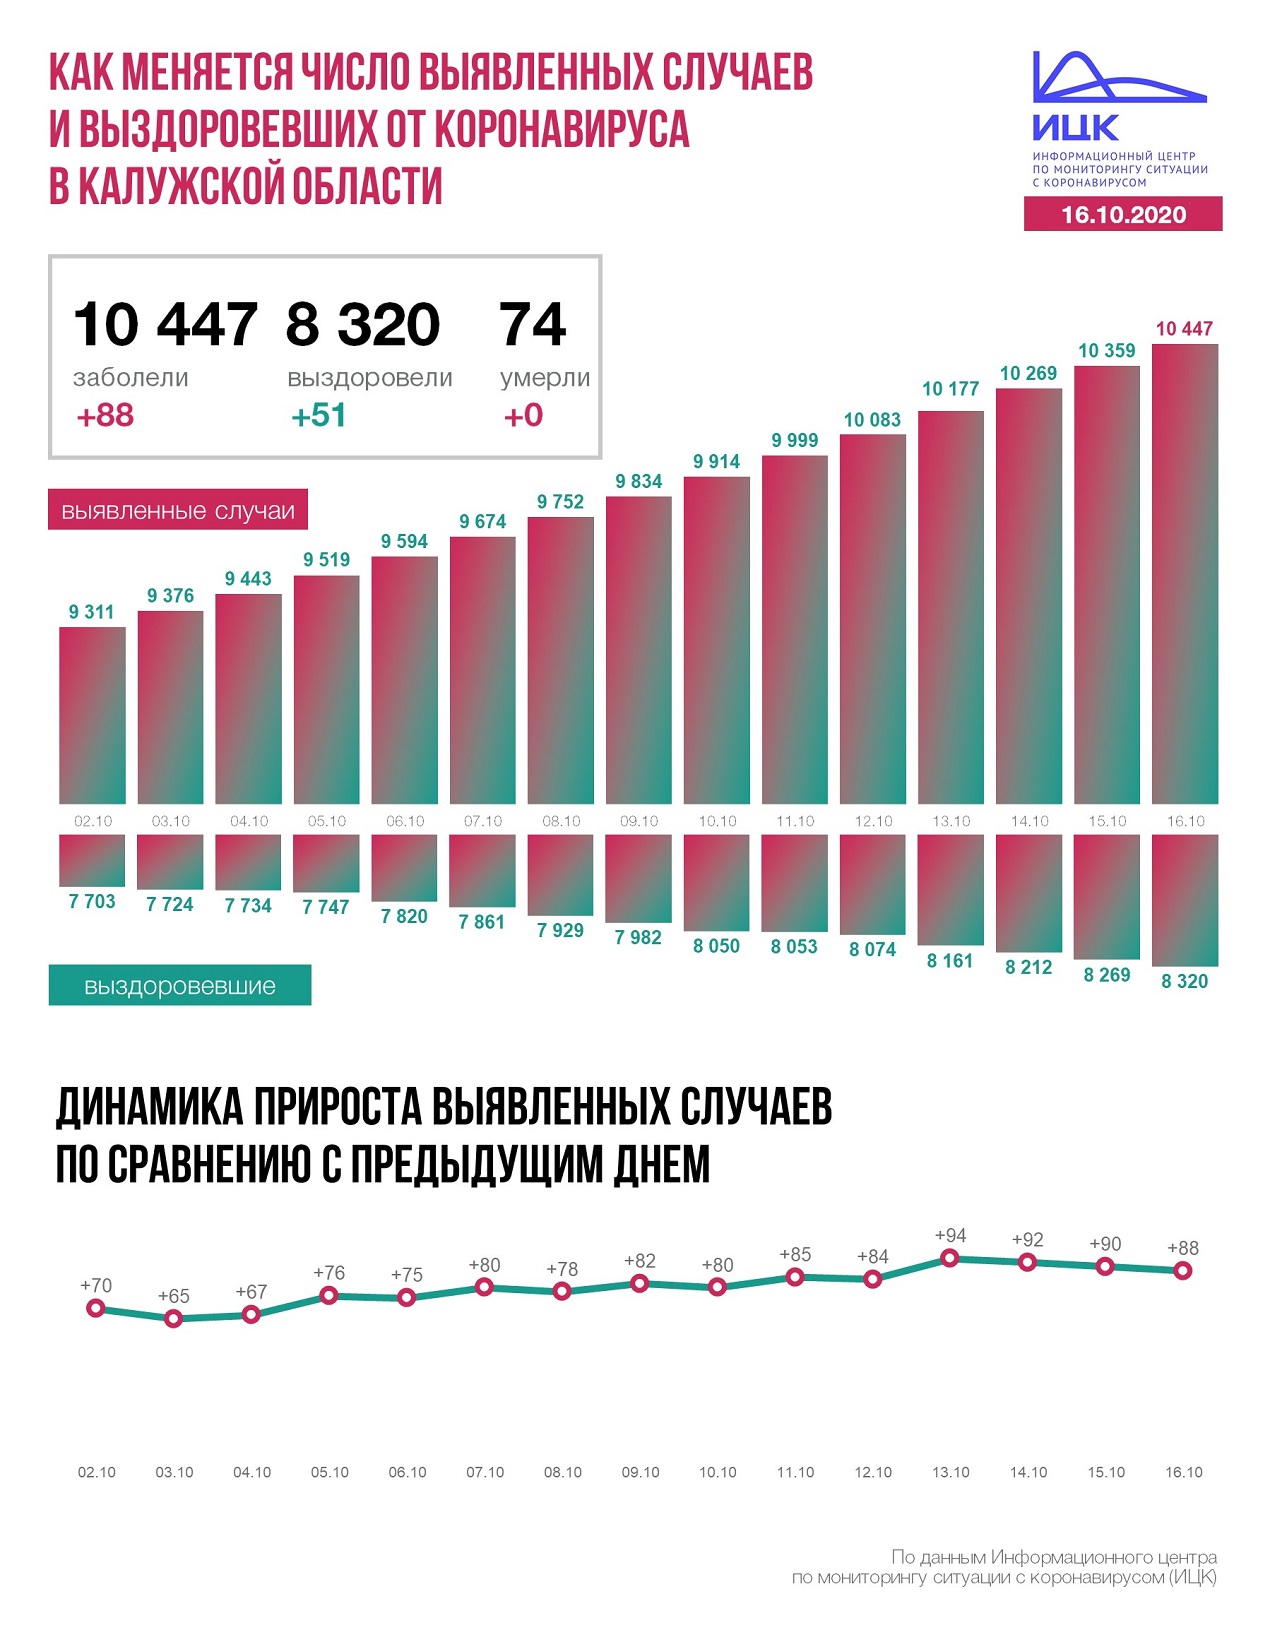 Официальные данные федерального оперативного штаба по коронавирусу в Калужской области на 16 октября 2020 года.